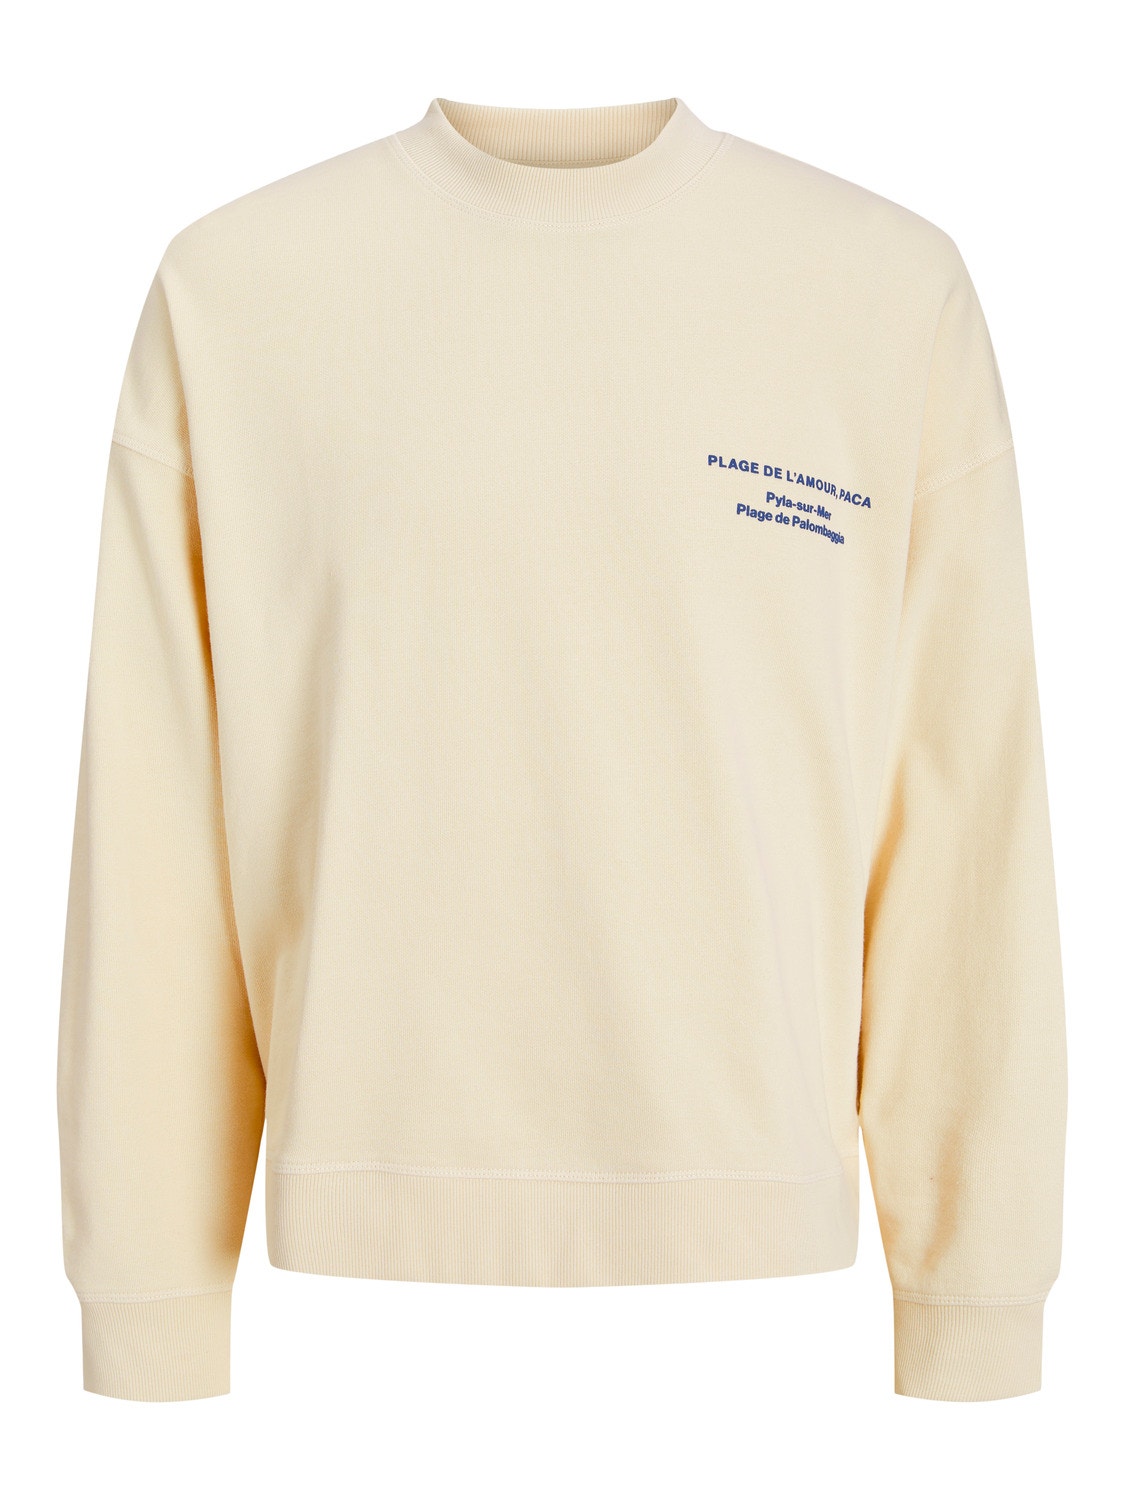 Jack & Jones Printed Crew neck Sweatshirt -Buttercream - 12253776